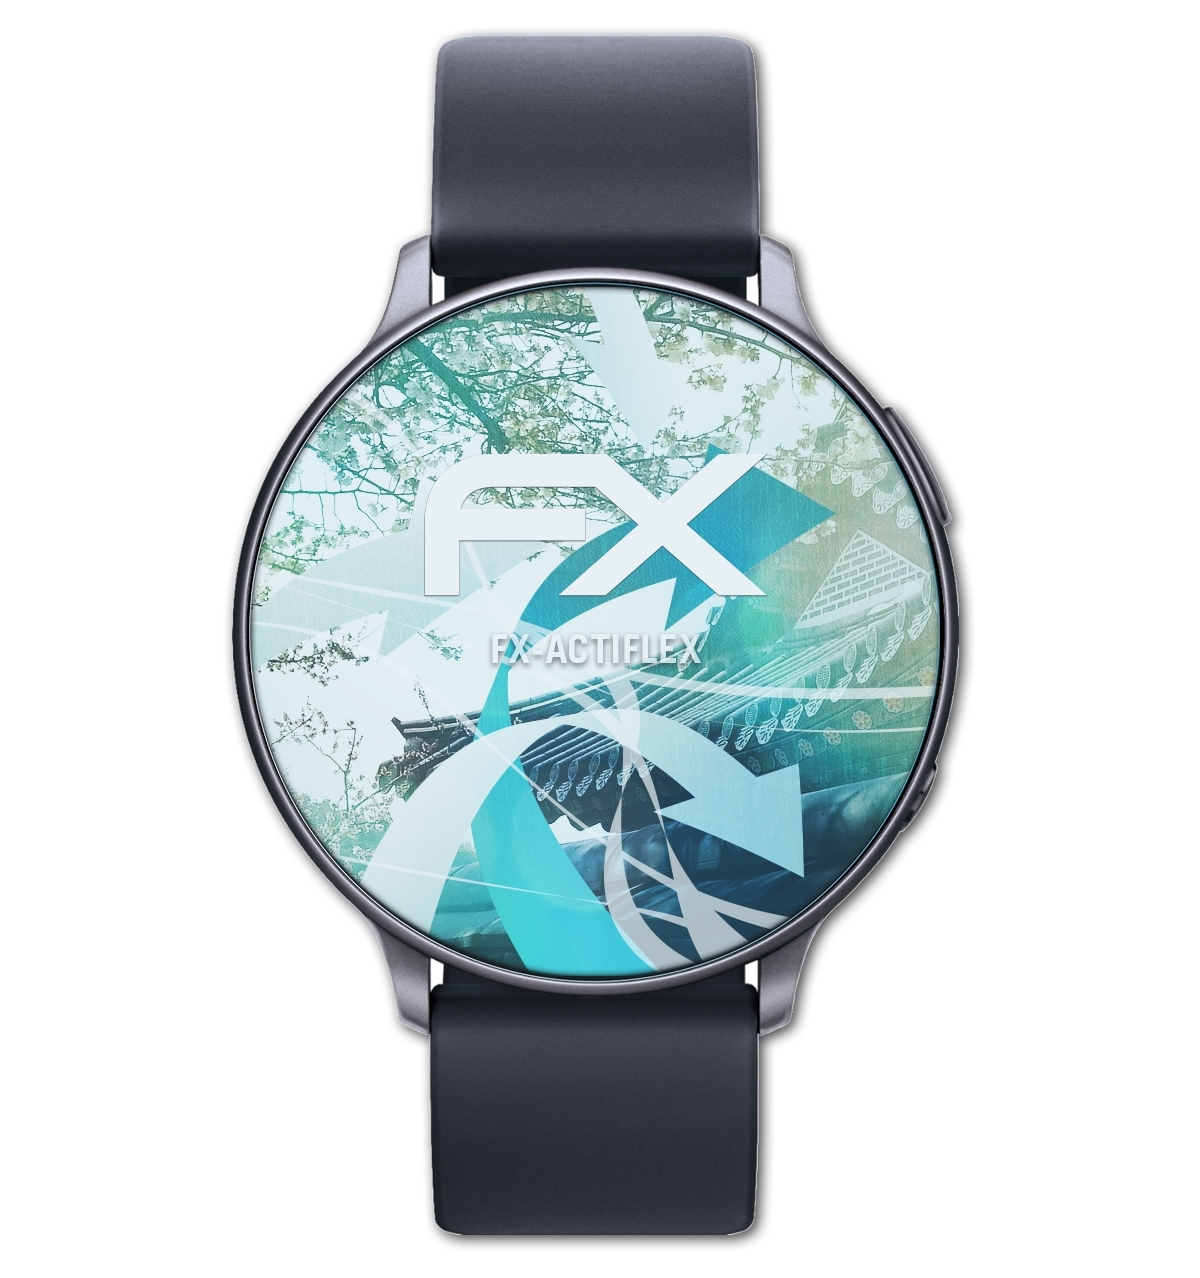 ATFOLIX 3x FX-ActiFleX Displayschutz(für Smartwatch Display (36mm))